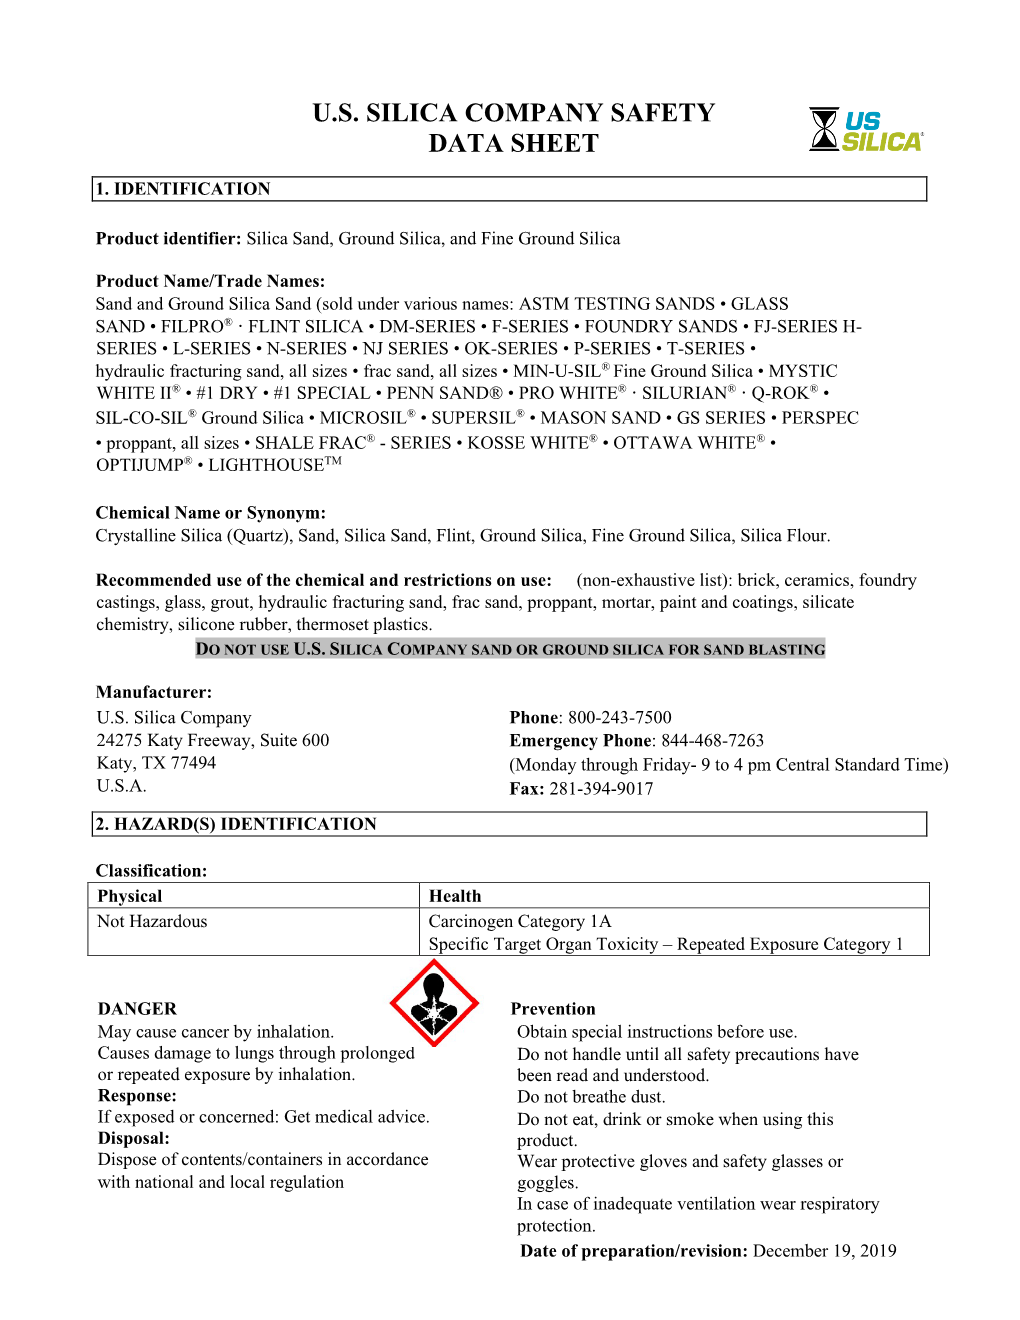 U.S. Silica Company Safety Data Sheet